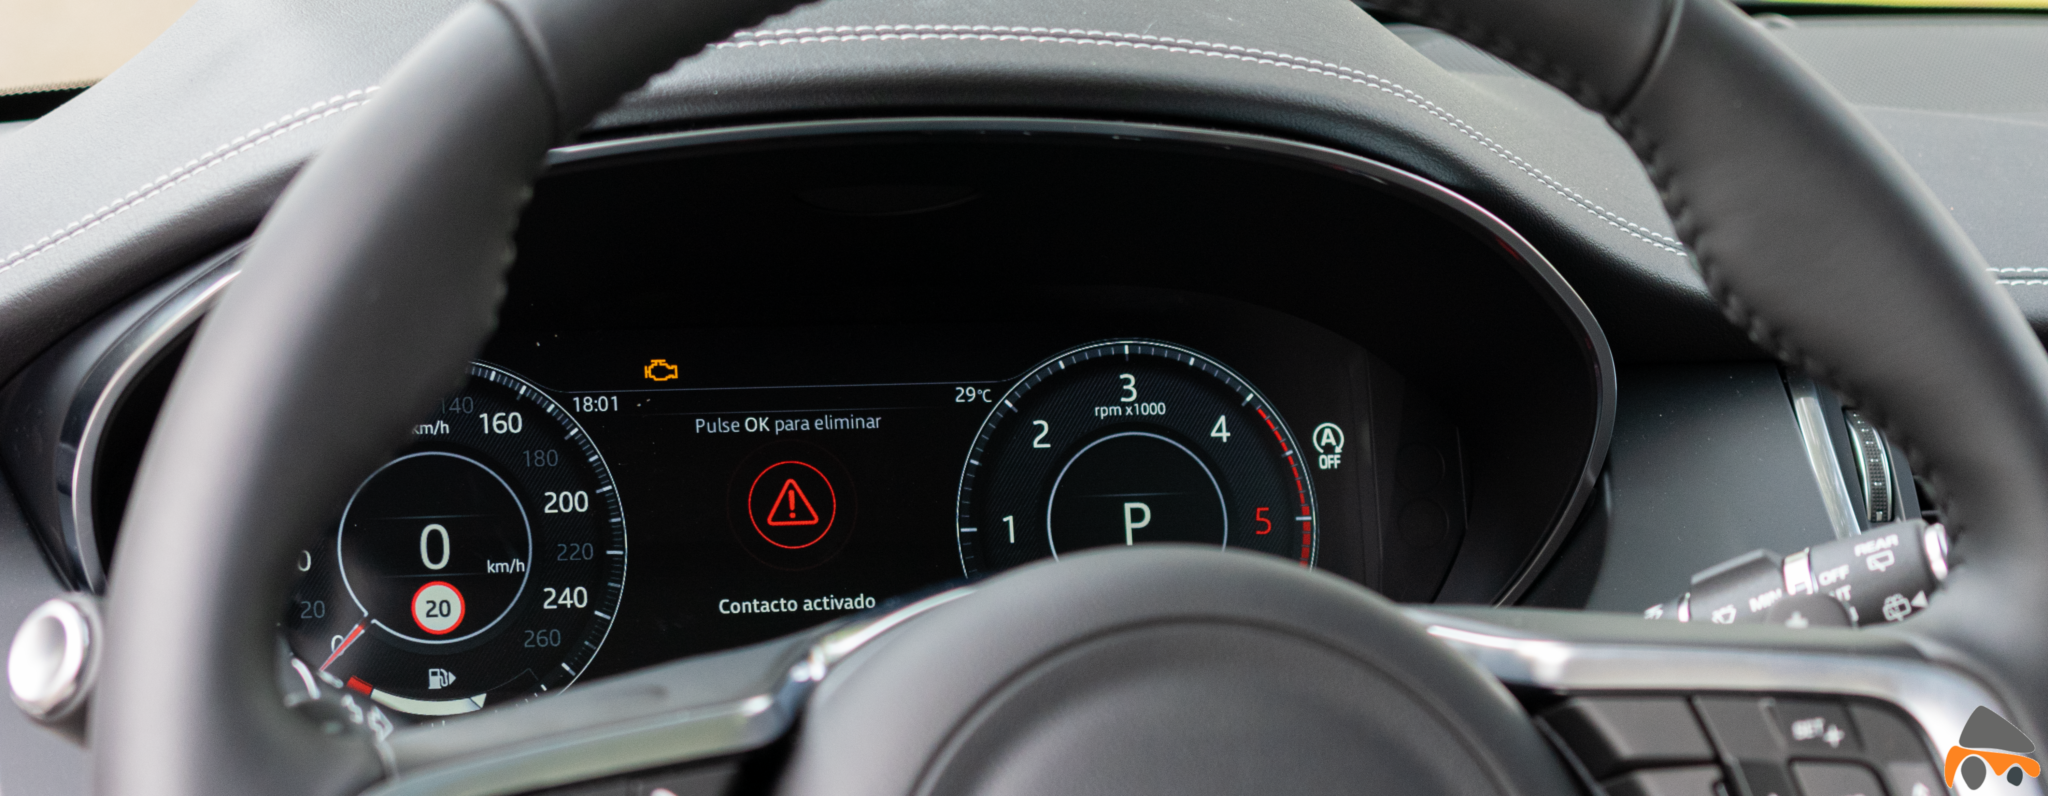 Pantalla digital conductor Jaguar E Pace - Jaguar E-Pace: El SUV de entrada a la gama